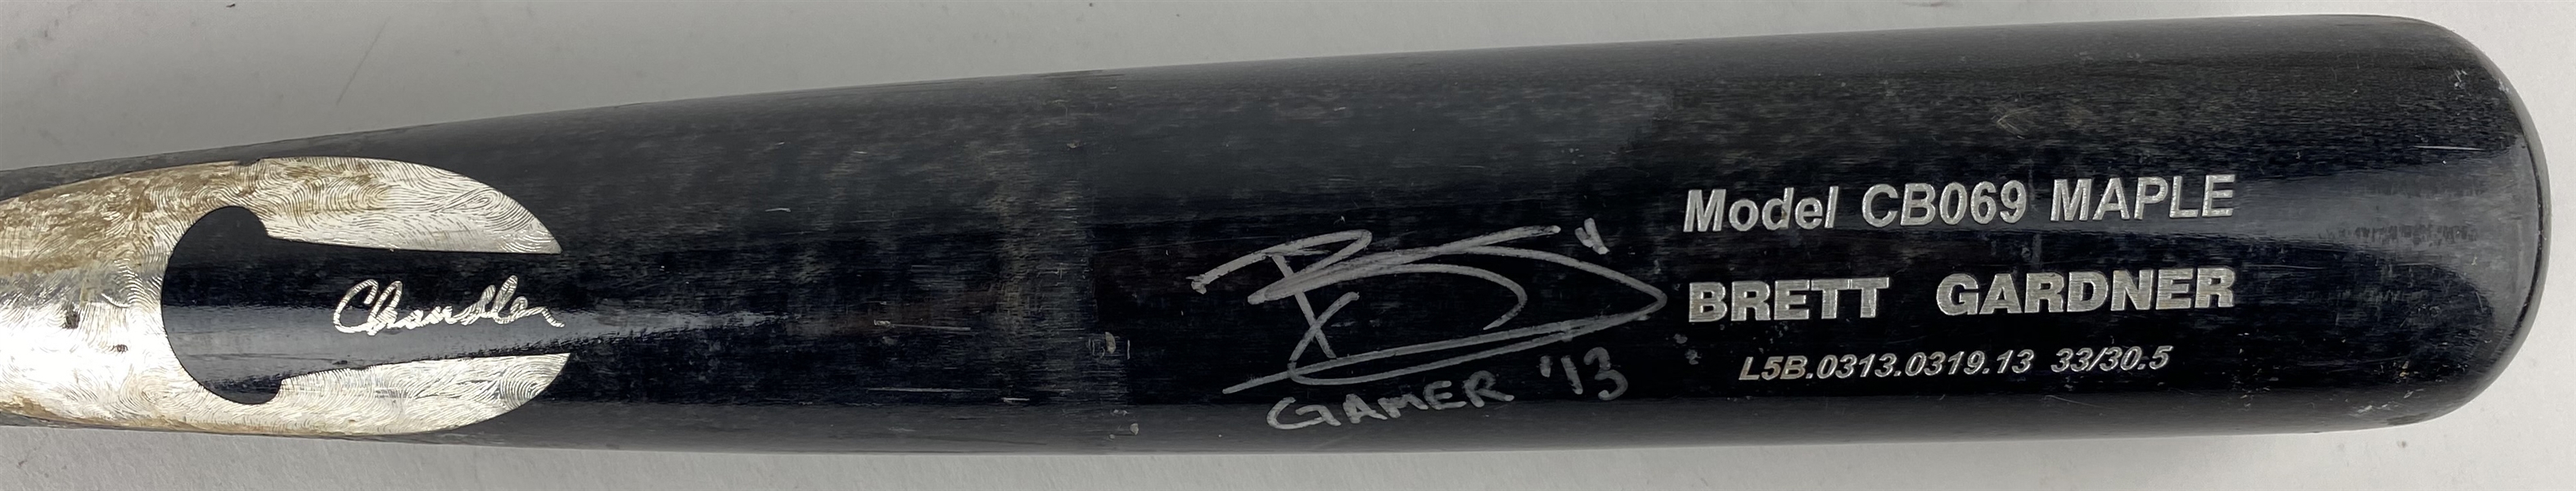 Brett Gardner Game Used & Signed 2013 CB069 Baseball Bat (PSA/DNA)